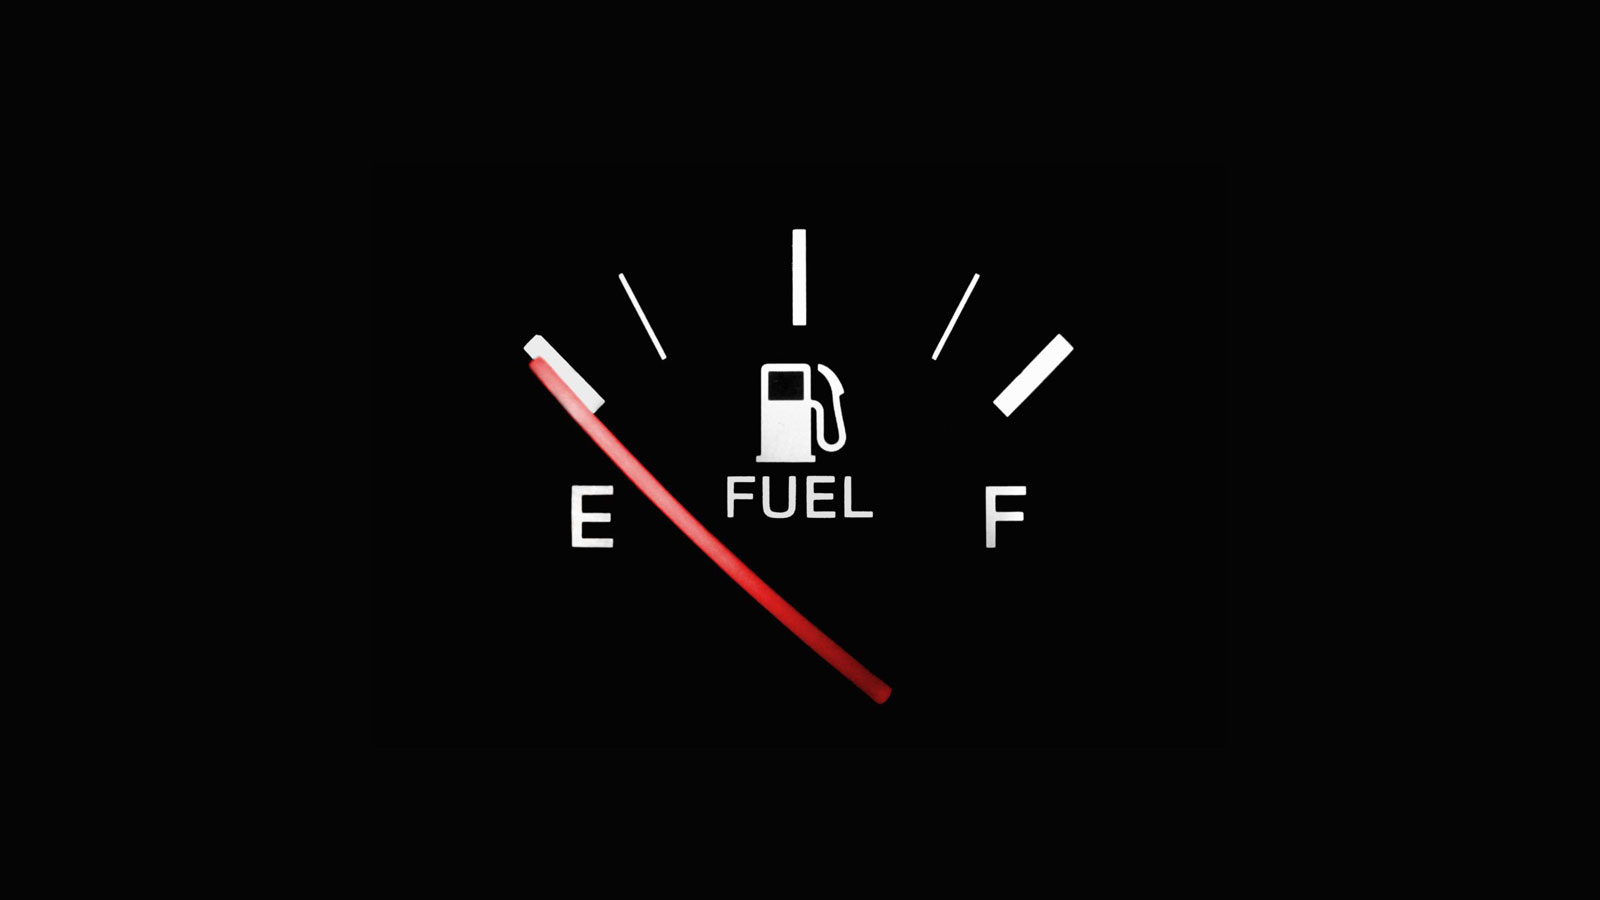 Fuel empty